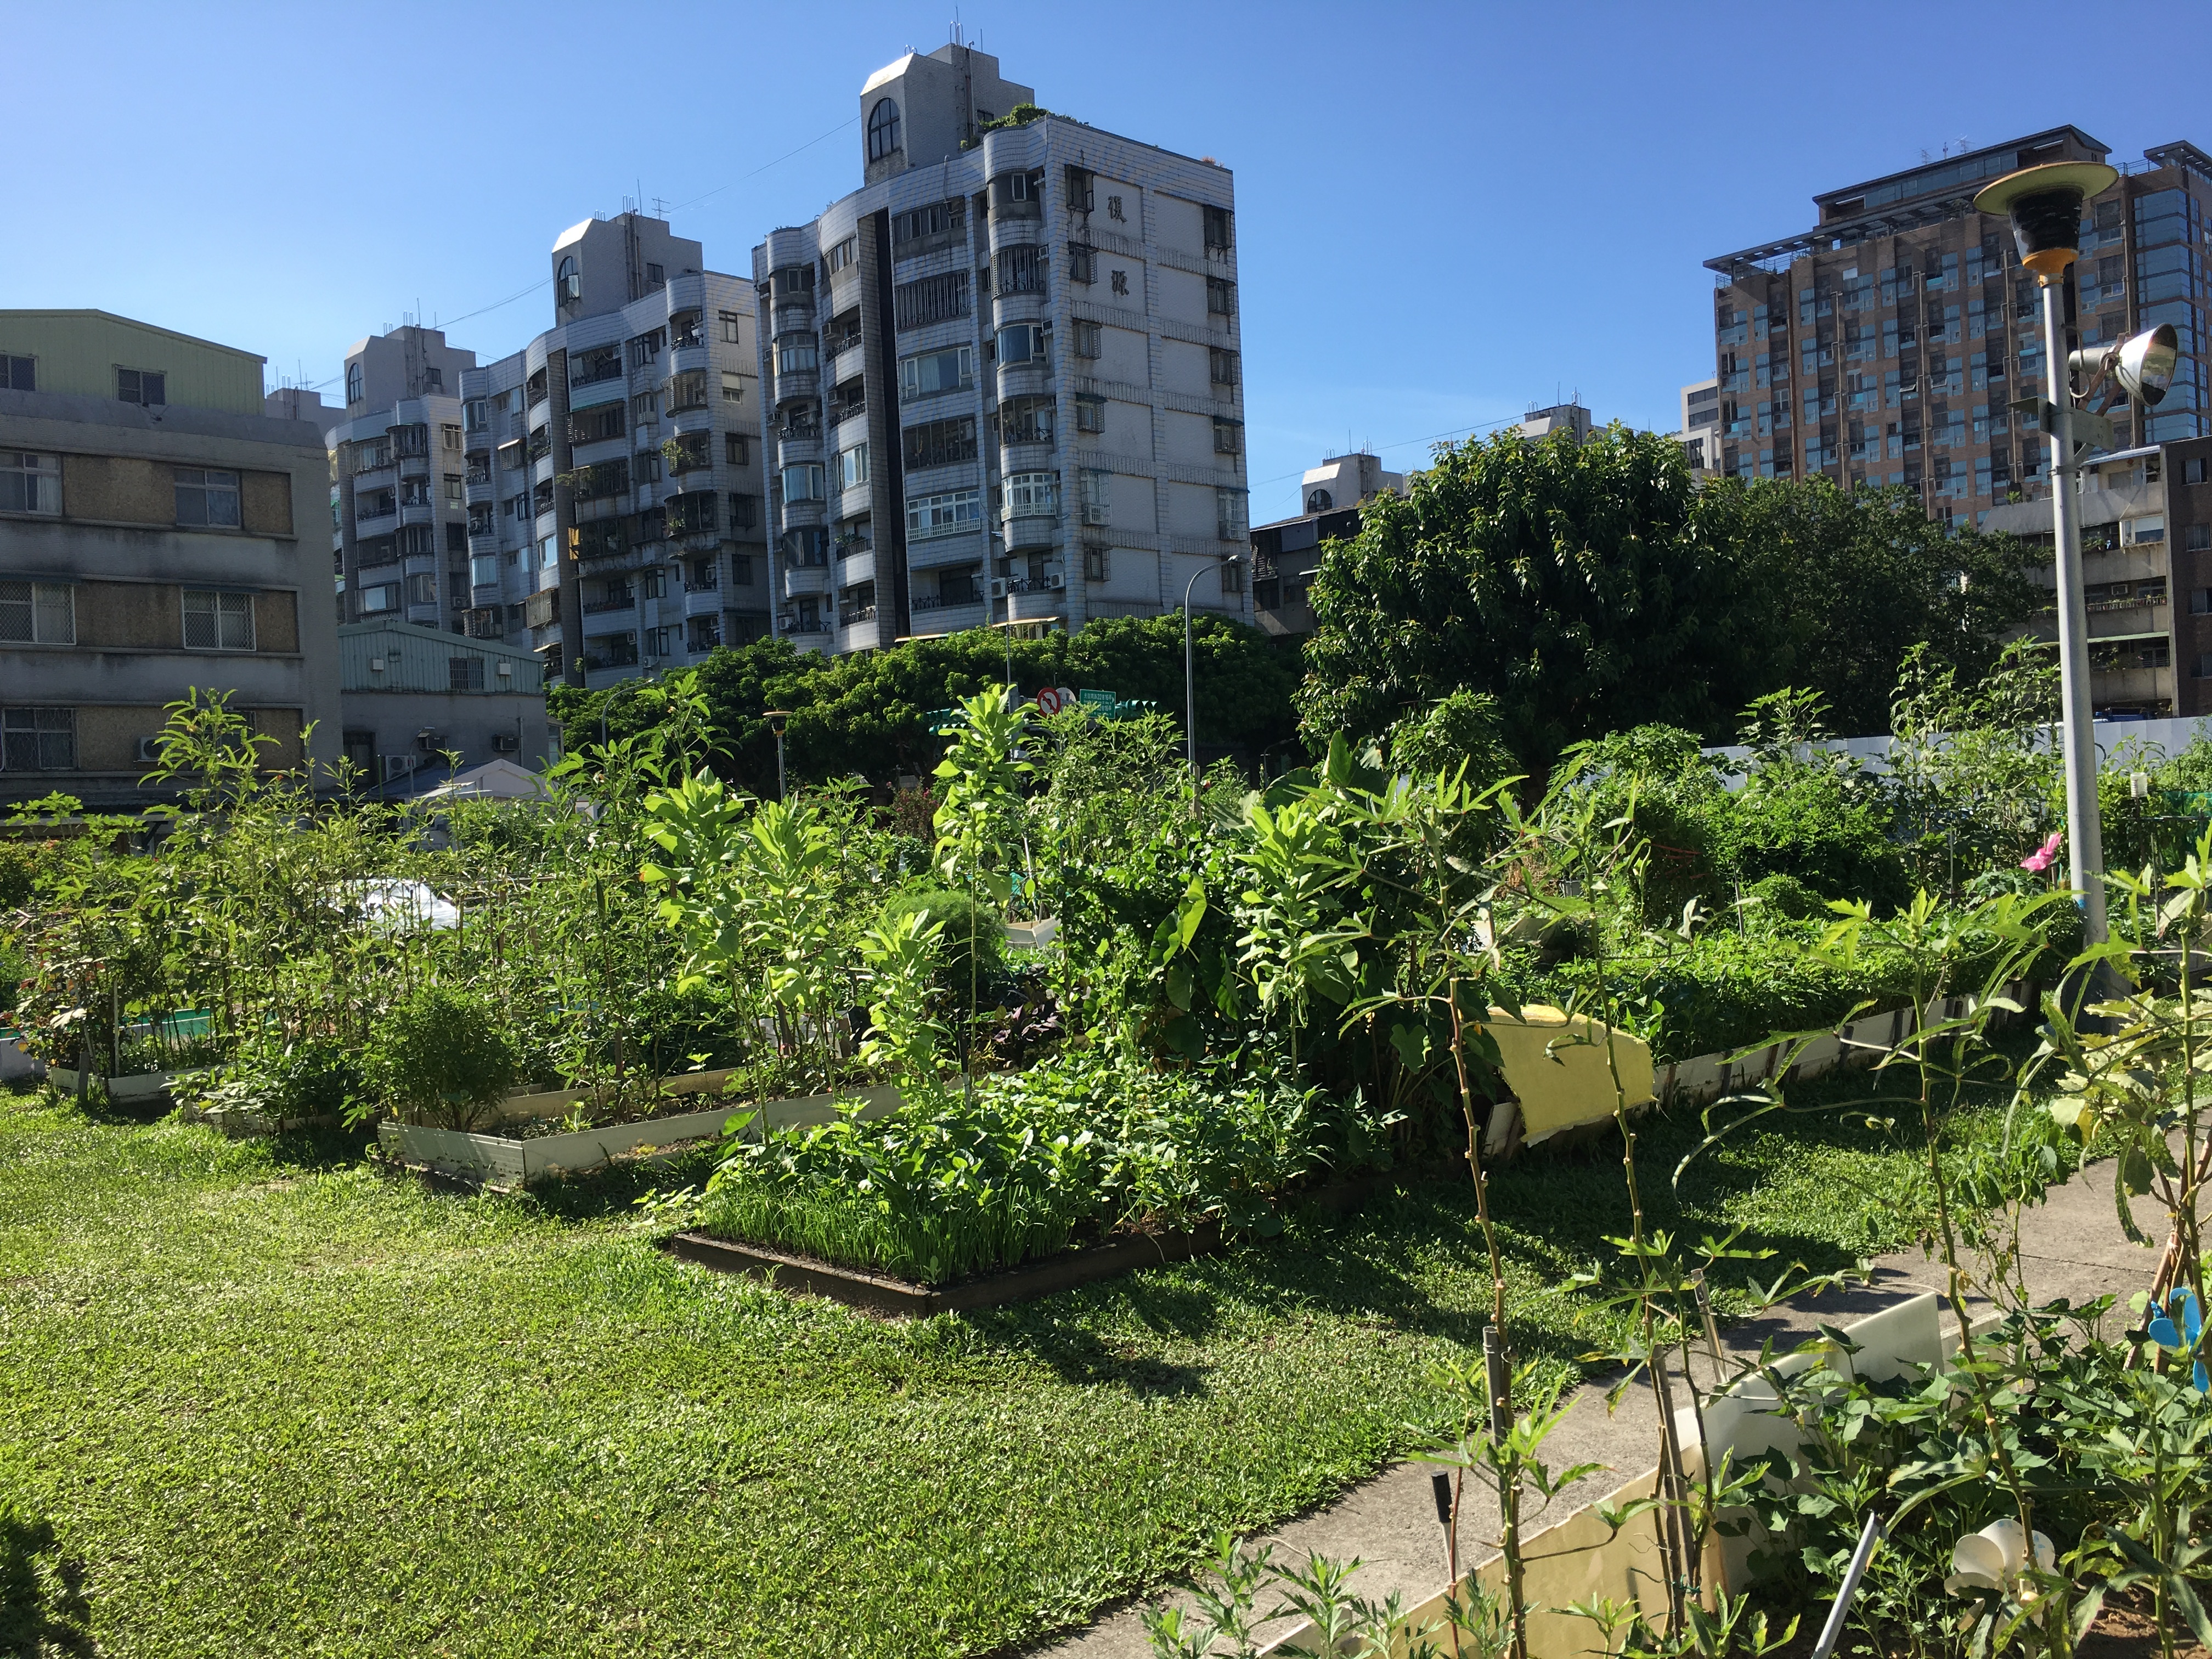 共創幸福社區園圃 打造互動鄰里城市